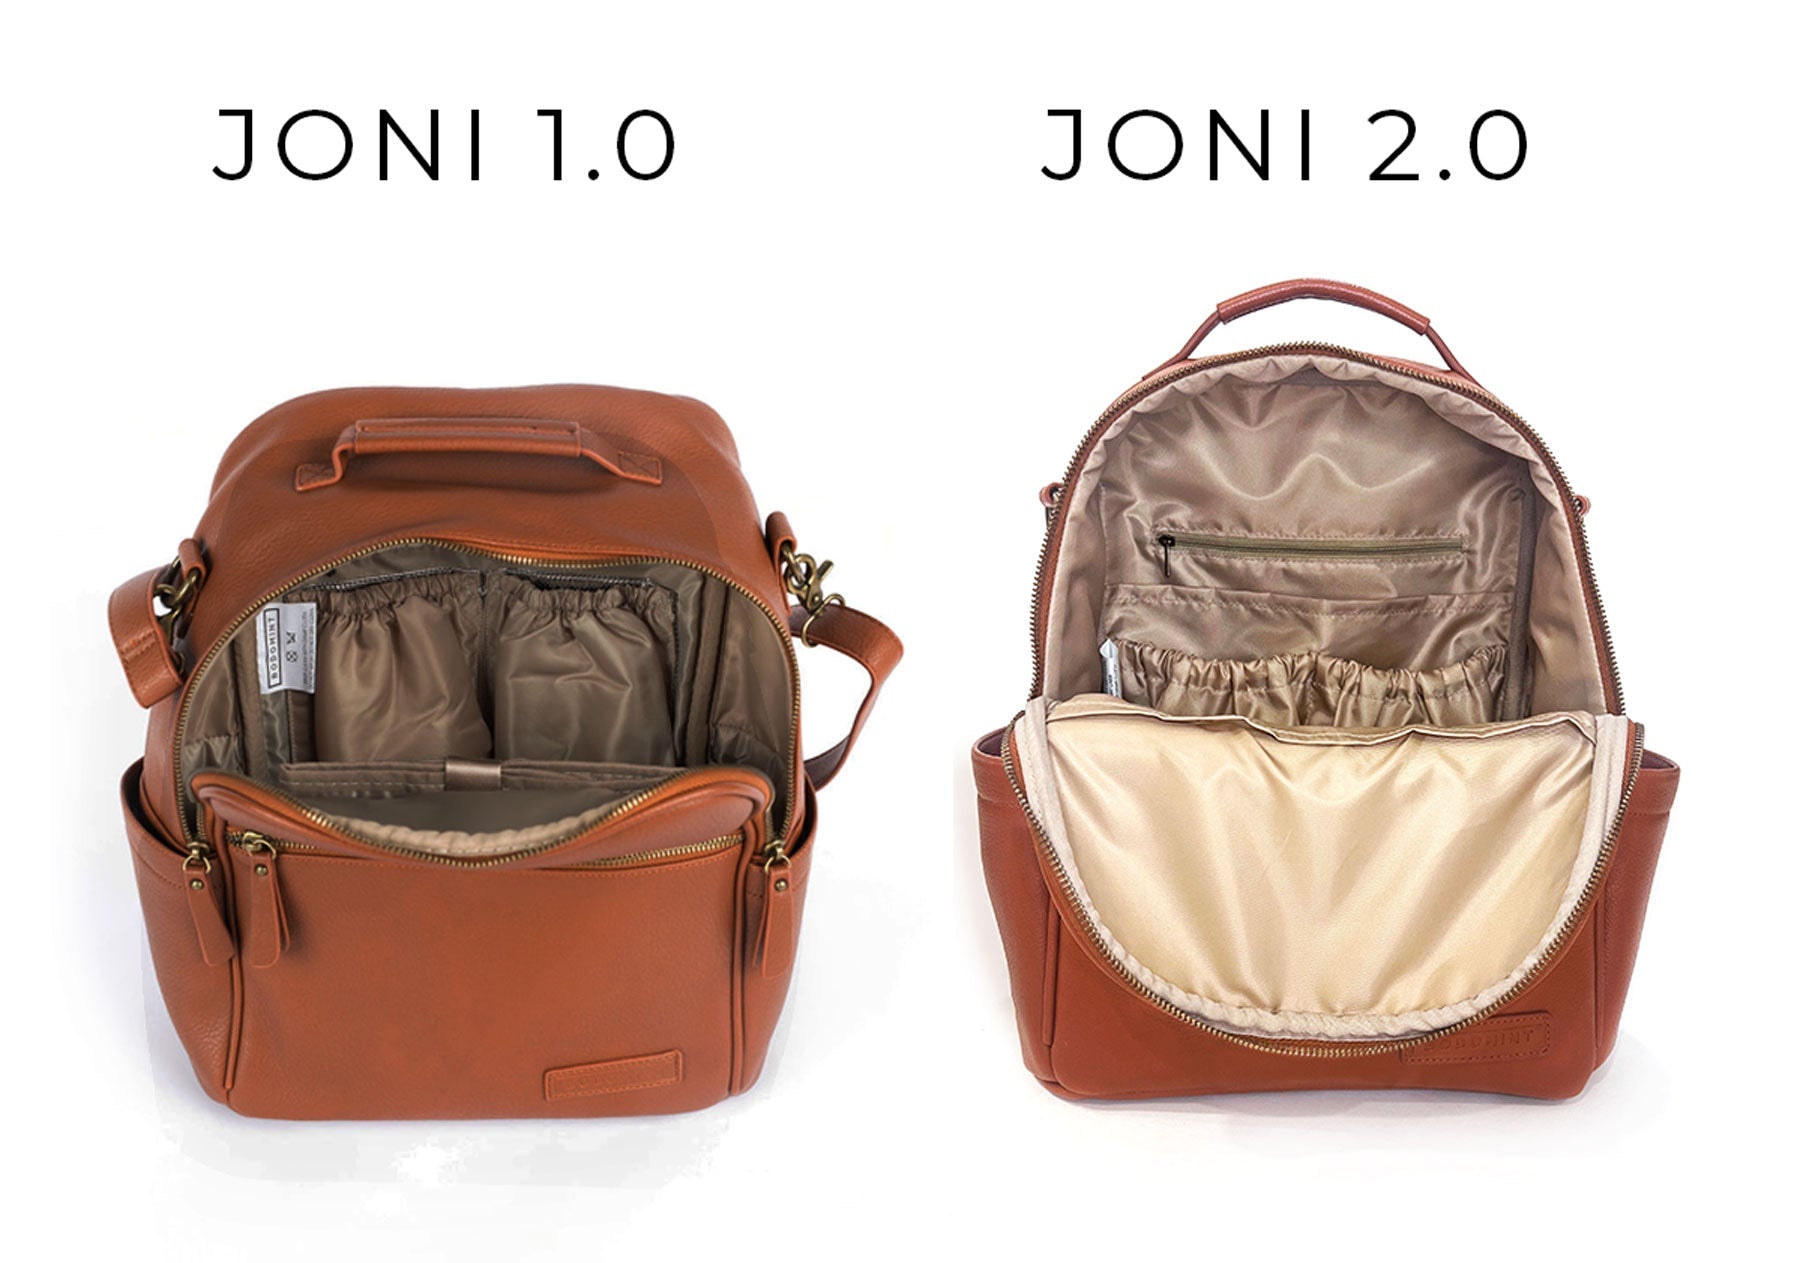 The Joni Backpack